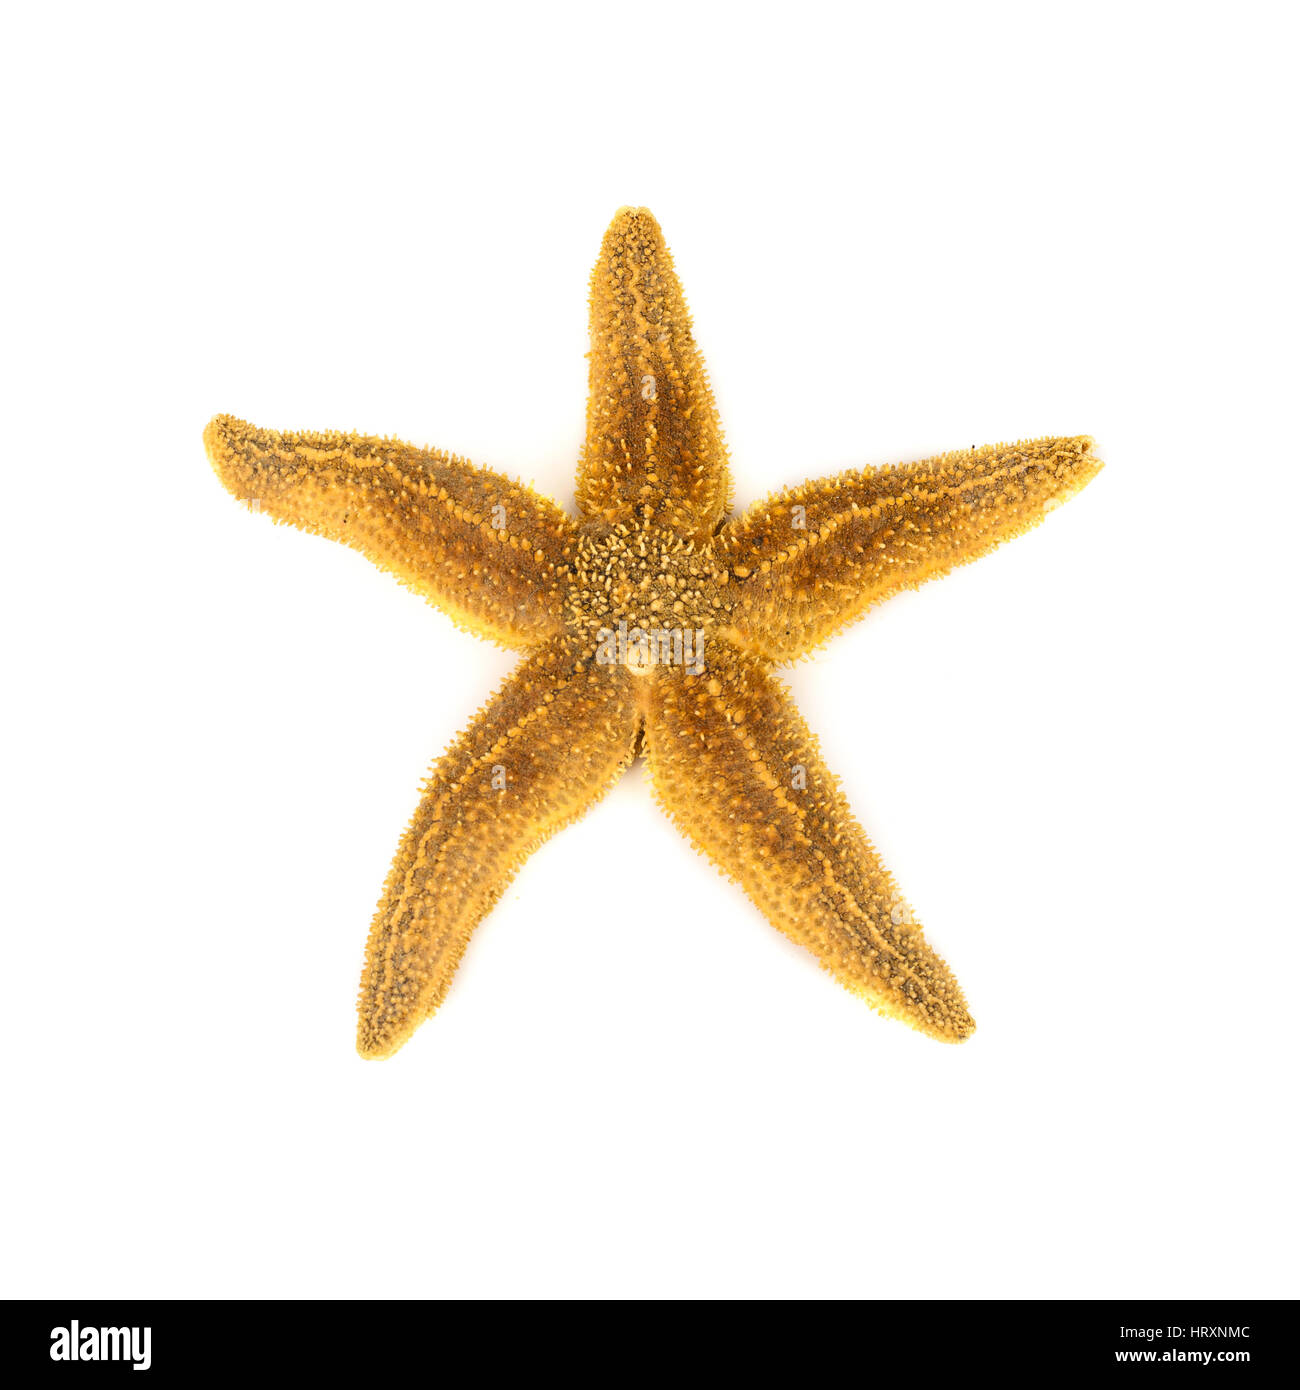 Starfish on white background Stock Photo